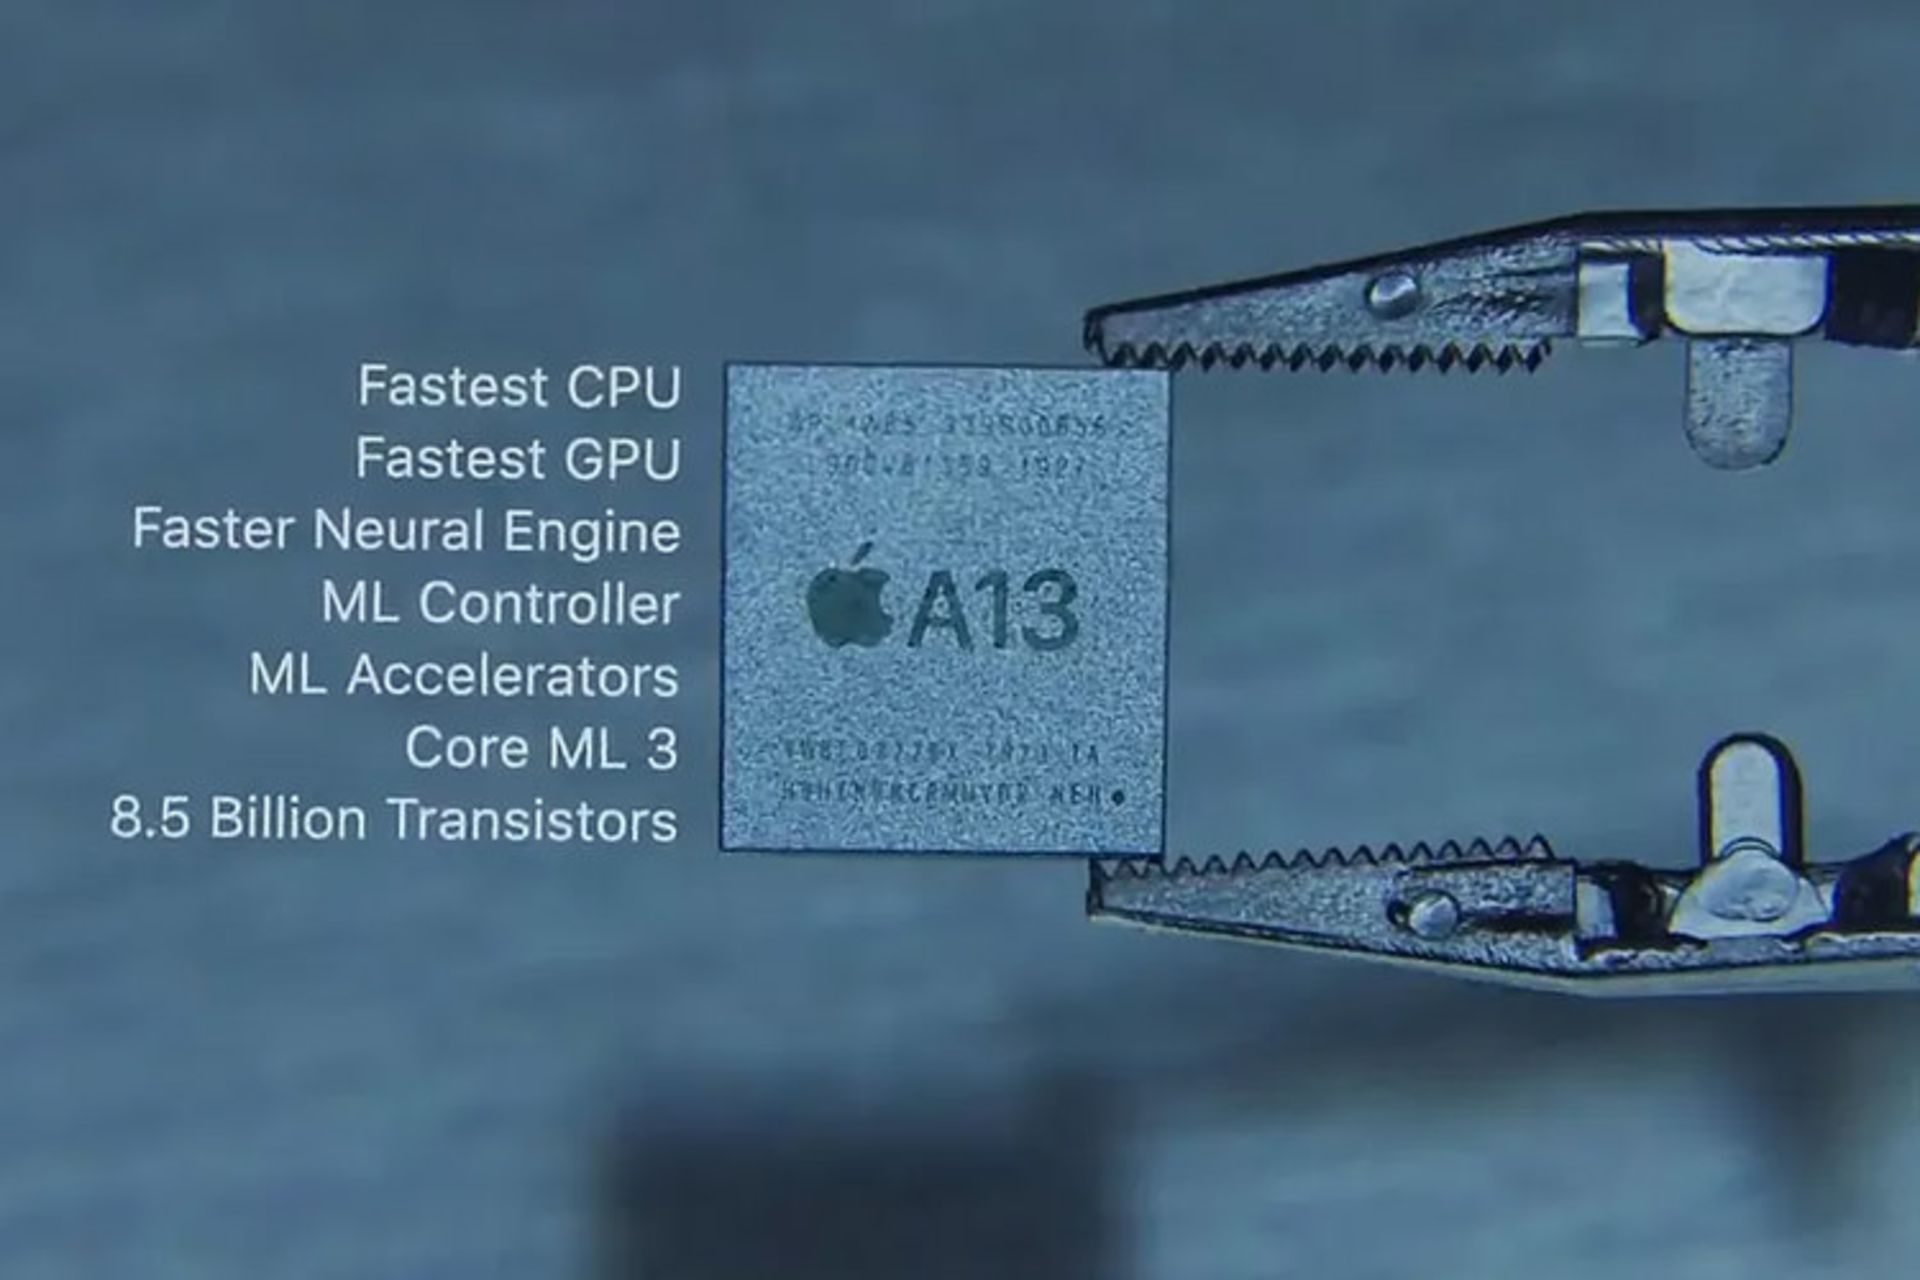 تراشه A13 بایونیک اپل / apple a13 bionic chip